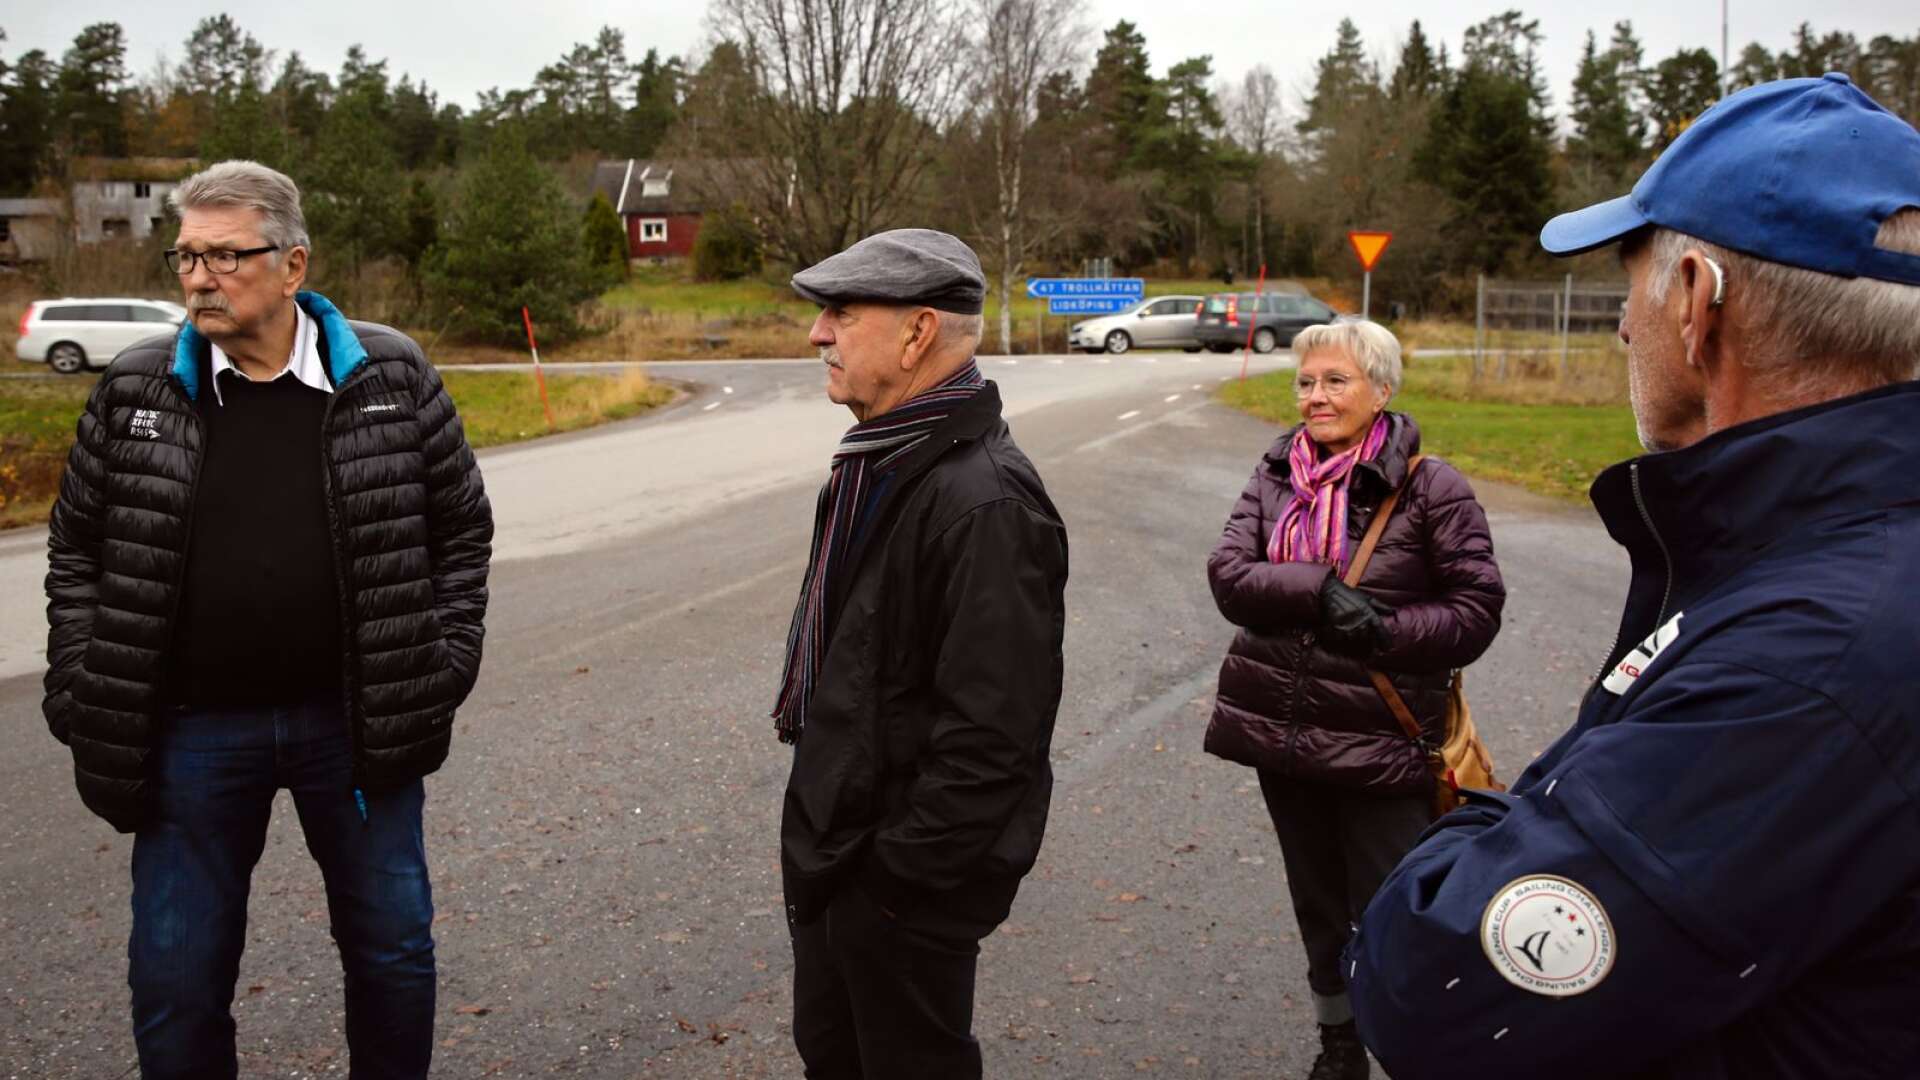 Boende i Gillstad har klagat hos Trafikverket om att vänstersvängen in till Gillstad från väg 44 är livsfarlig. Det menar att det behövs en vänsterfil för att man ska känna sig trygg. Halvard Fridell, Ronny Karlsson, Gunnel Karlsson och Rune Gustafsson är några som är oroliga.